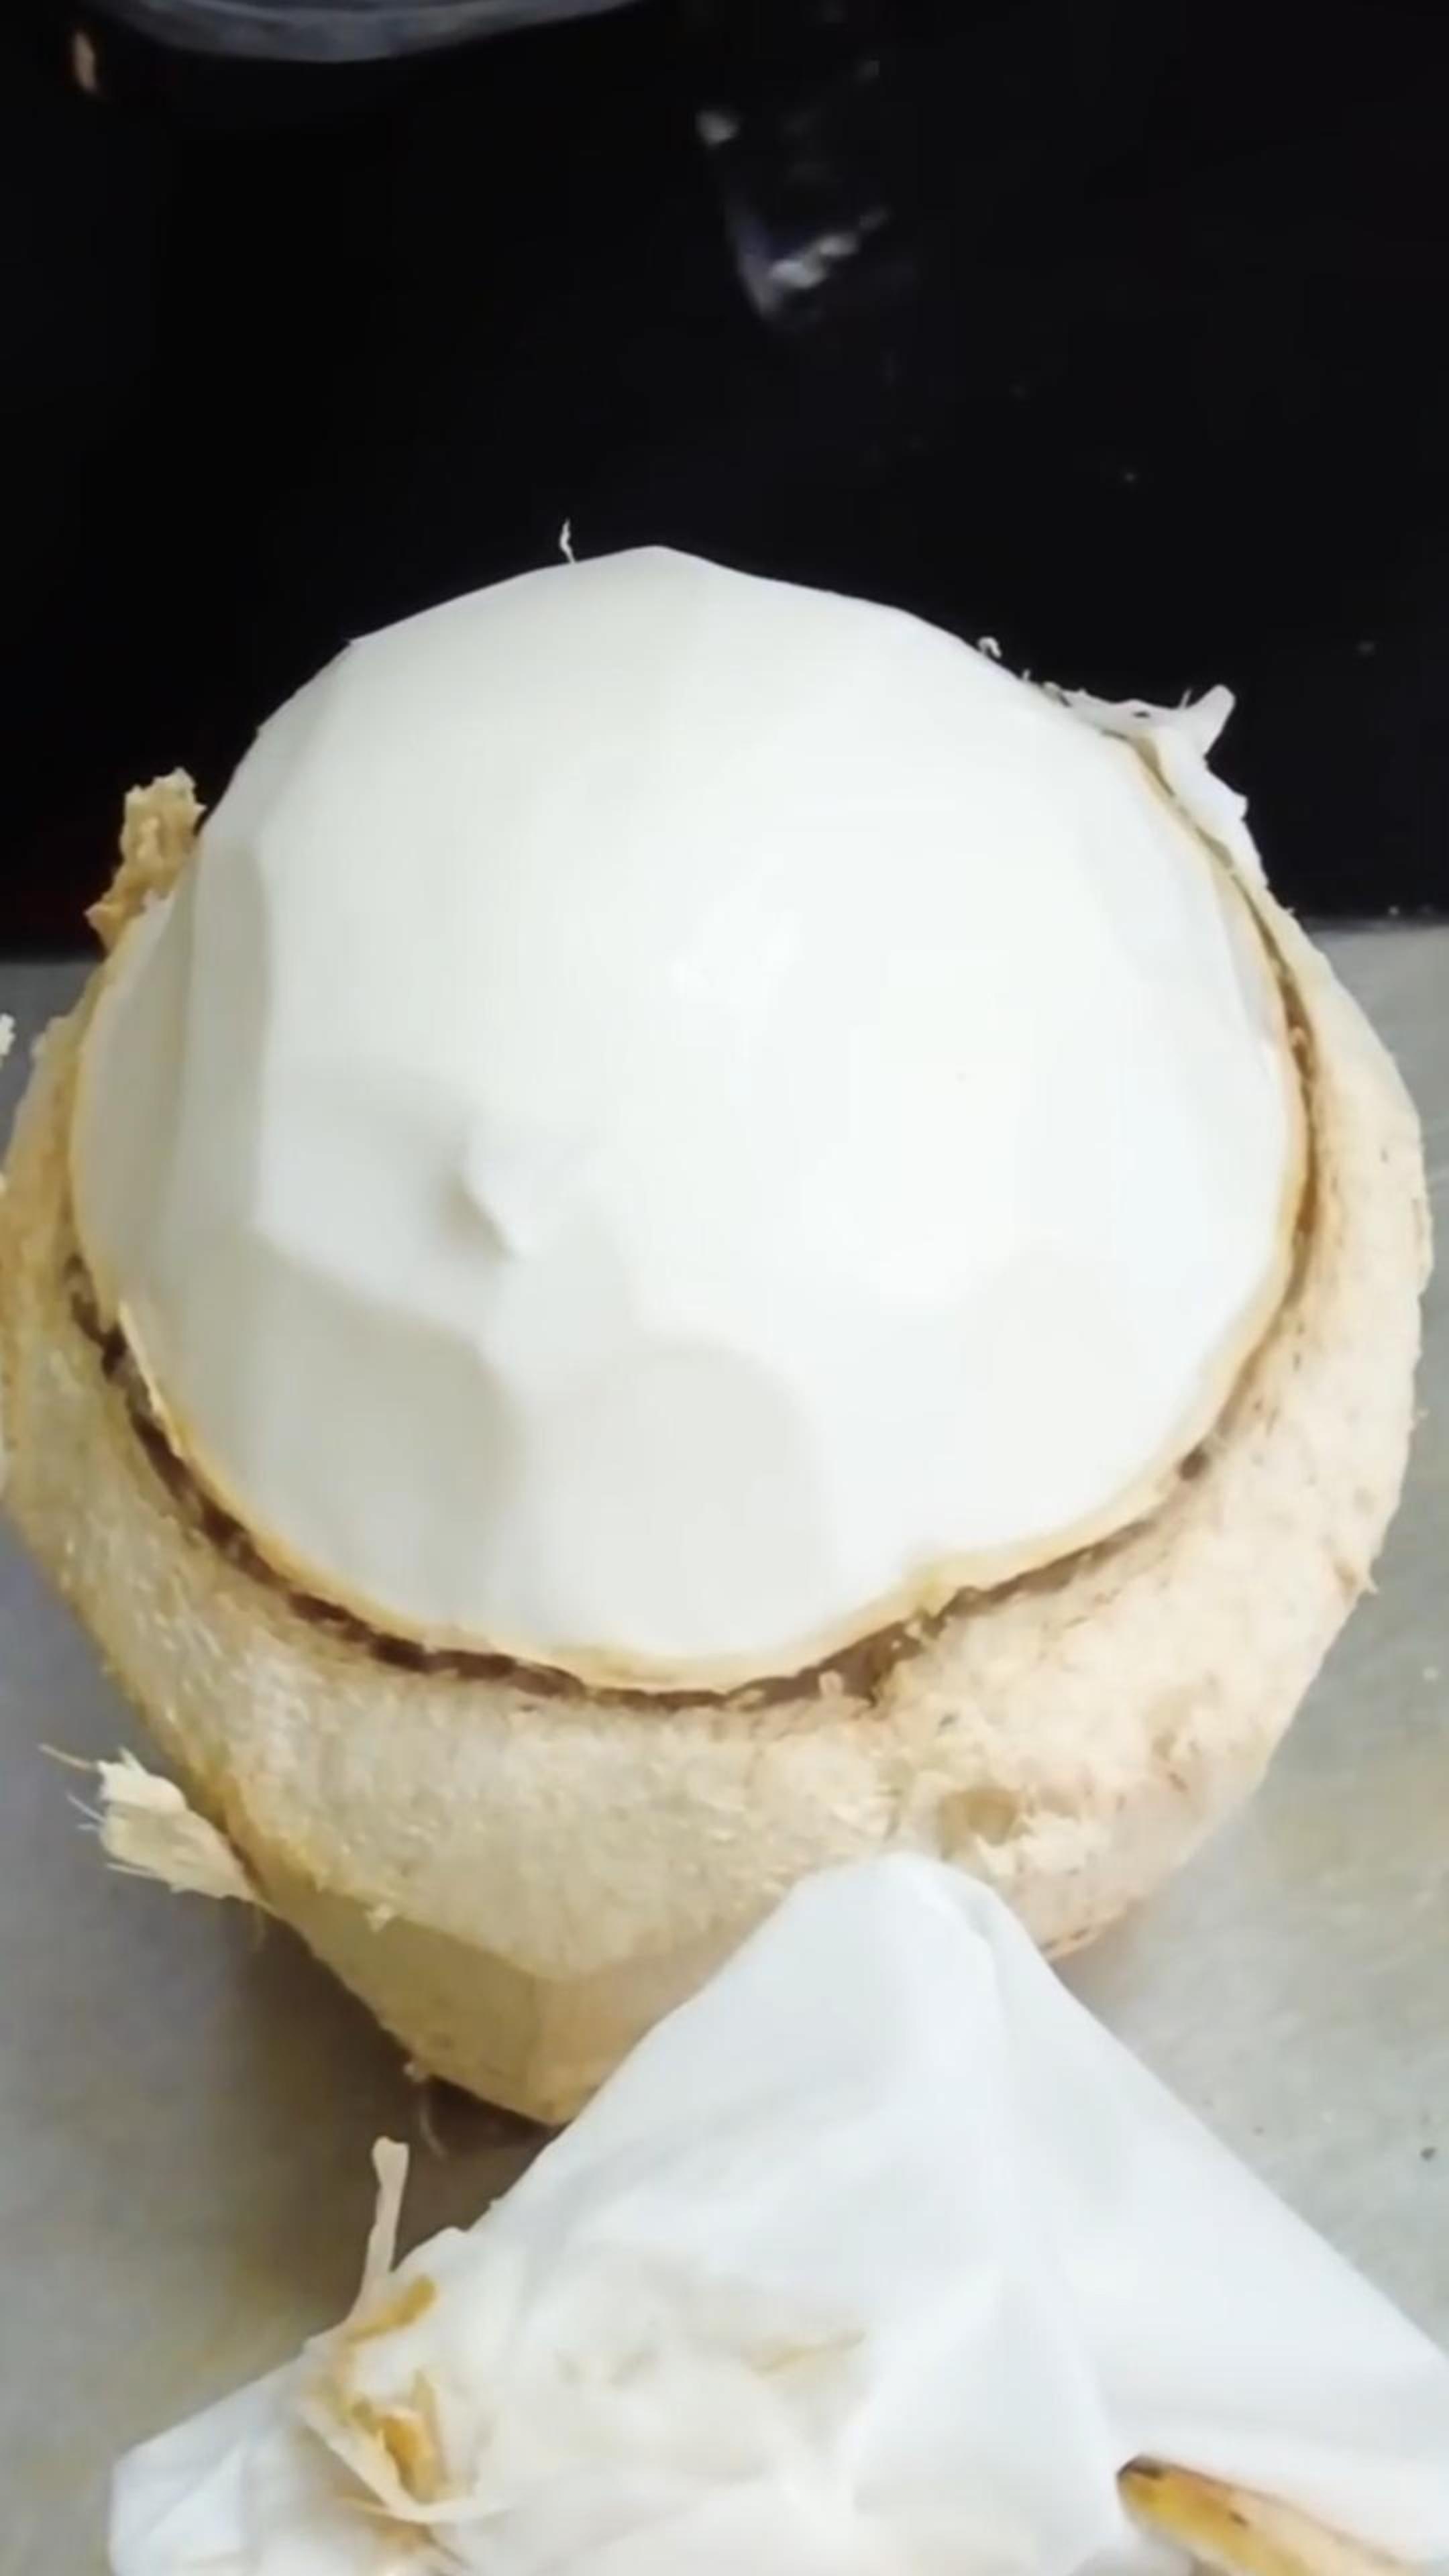 Круглая и нежная кокосовая мякоть| кокосовое производство #кокос #shorts